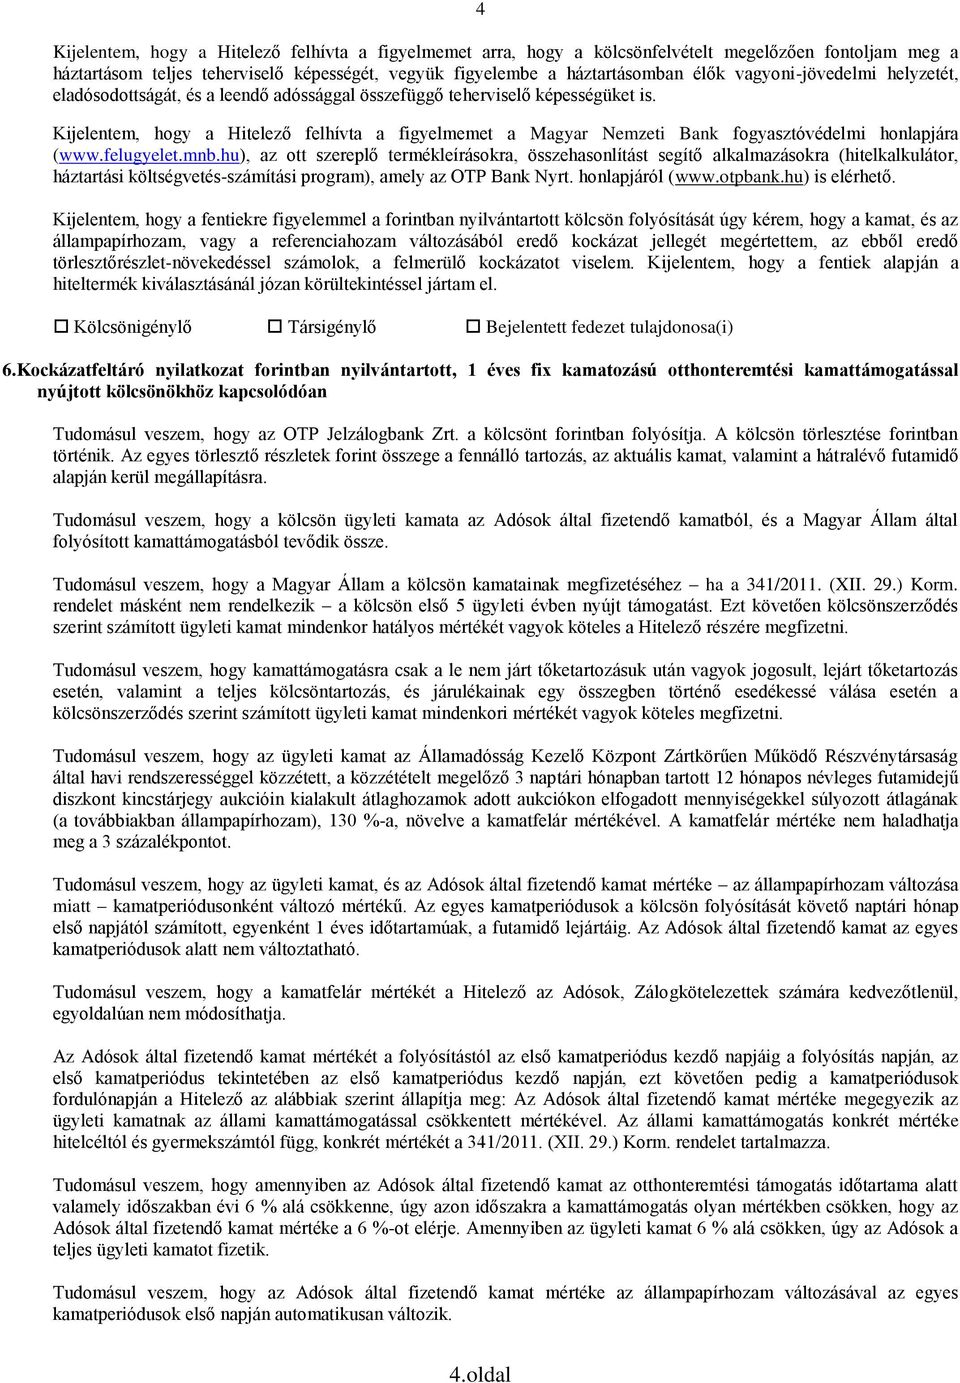 Kijelentem, hogy a Hitelező felhívta a figyelmemet a Magyar Nemzeti Bank fogyasztóvédelmi honlapjára (www.felugyelet.mnb.